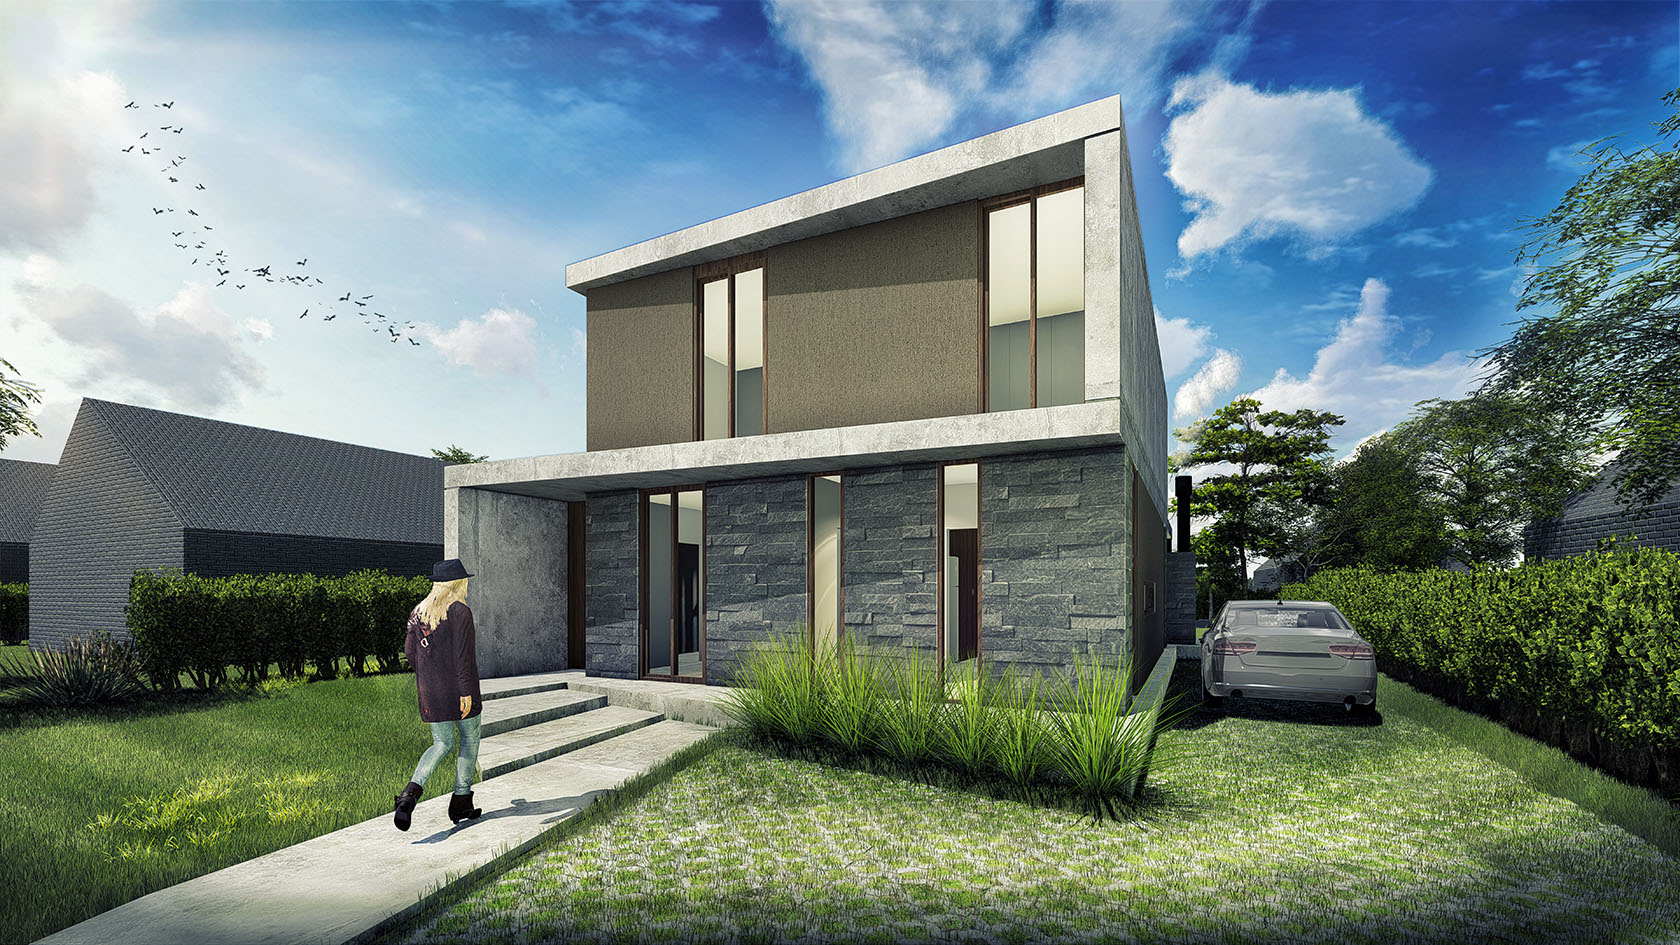 Vista Frente de casa moderna, diseño de fachadas modernas en casas, fachada con hormigón y piedra